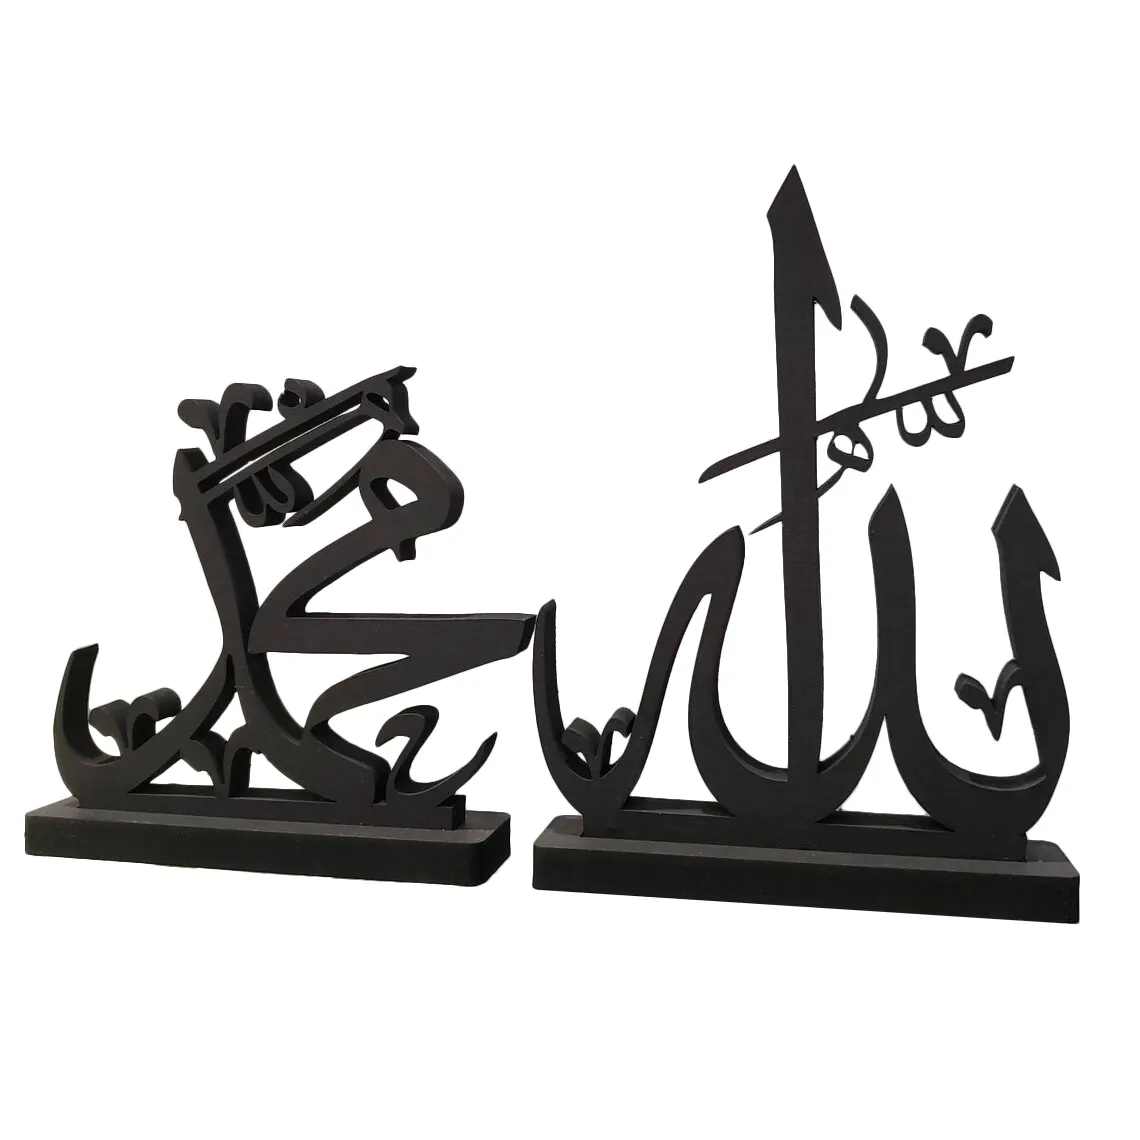 Красивый 3D Аллах Мохаммед исламское искусство арабская каллиграфия Искусство столешница деревянная подставка украшение буквенный знак Искусство